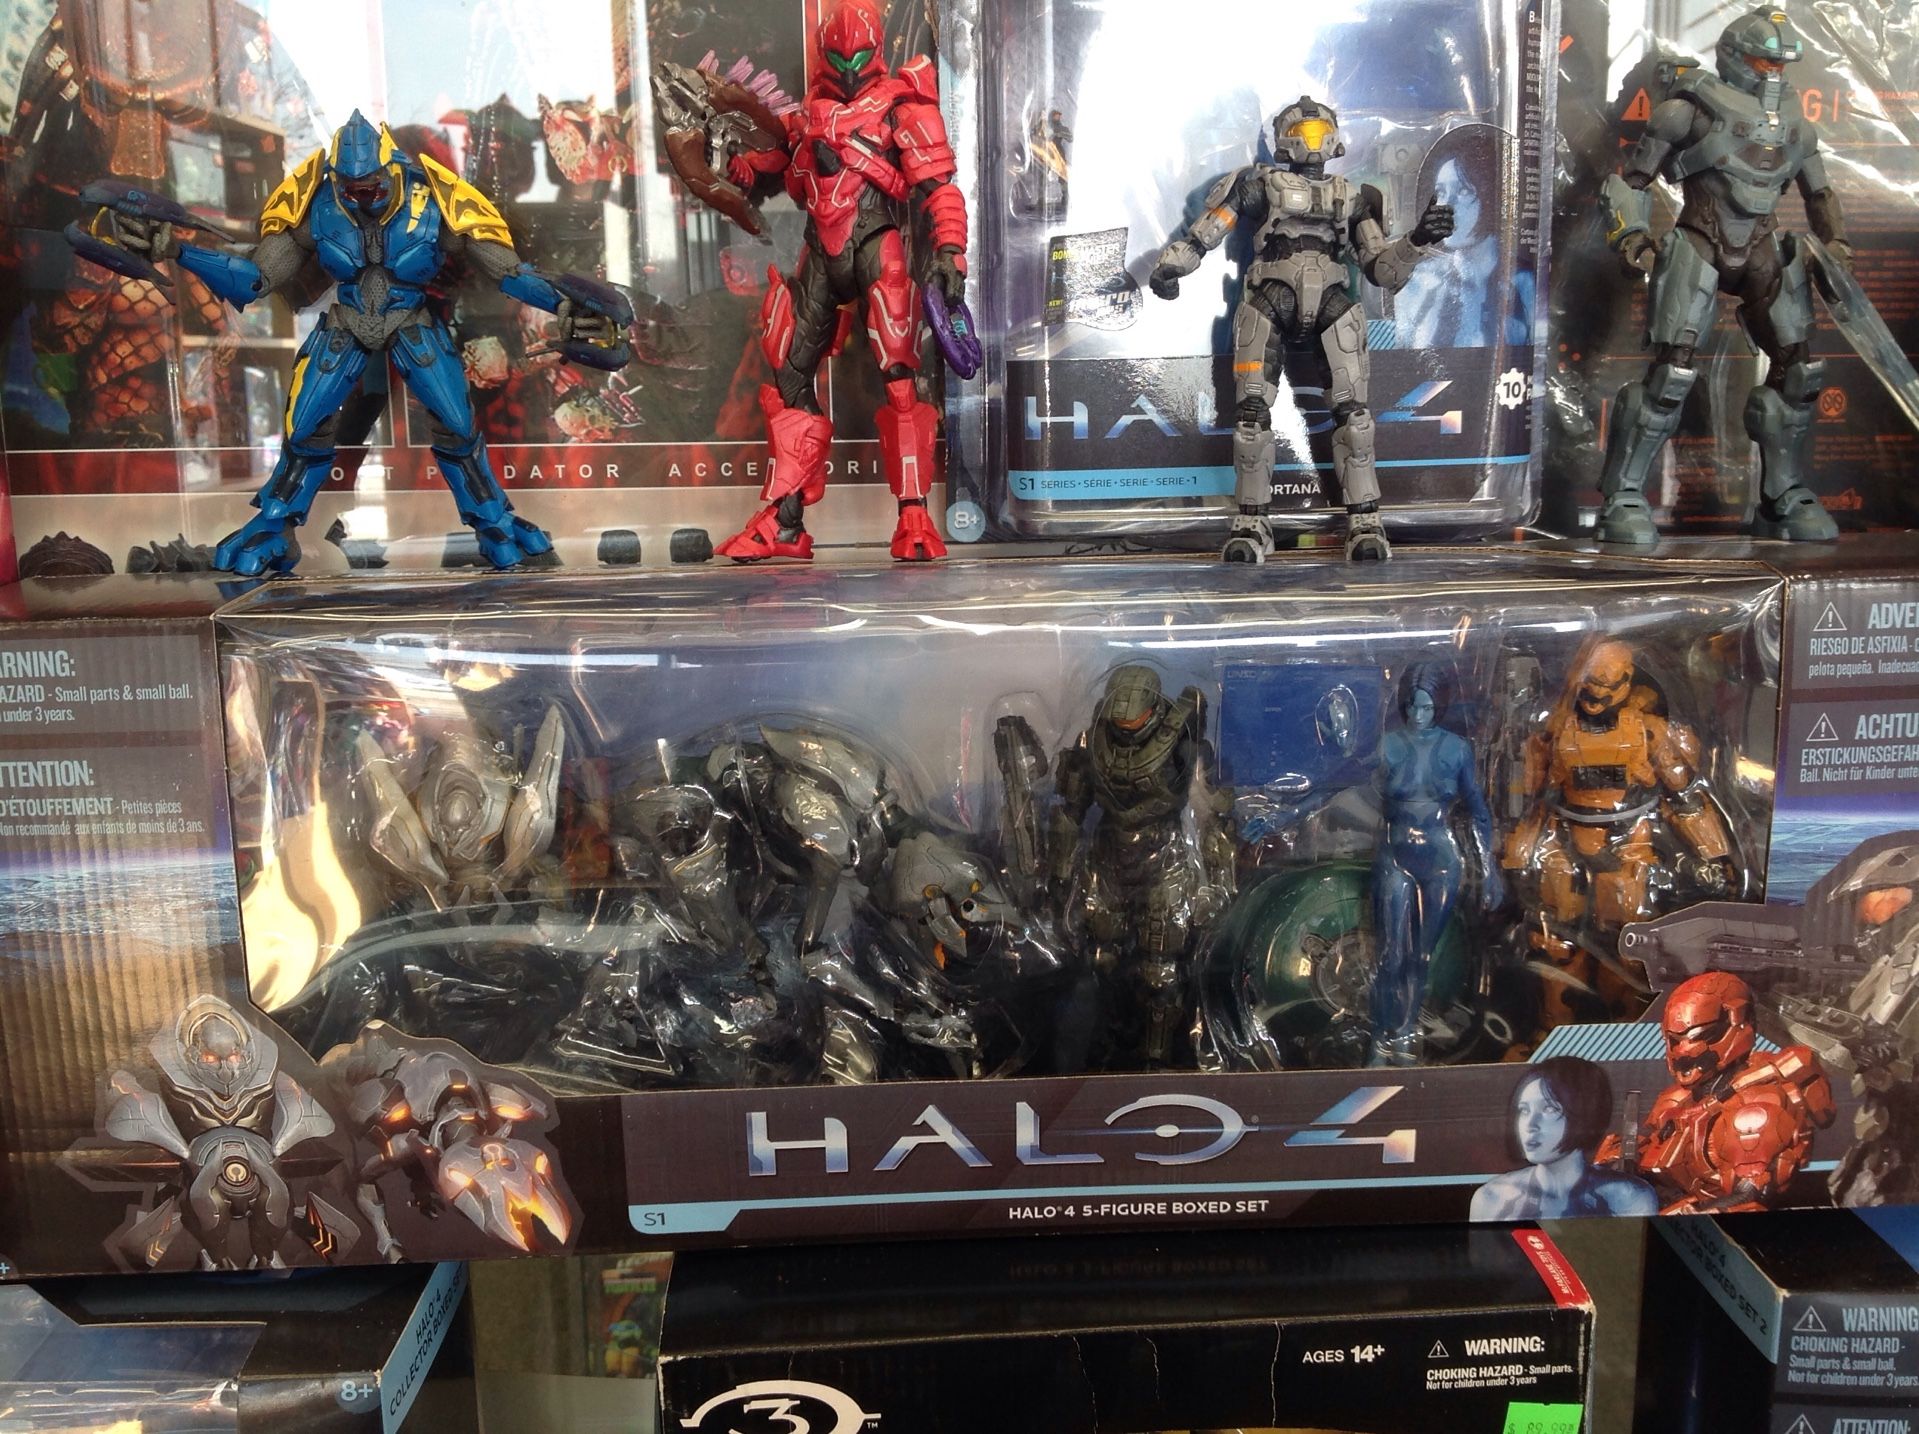 Halo 4 5 figure boxed set